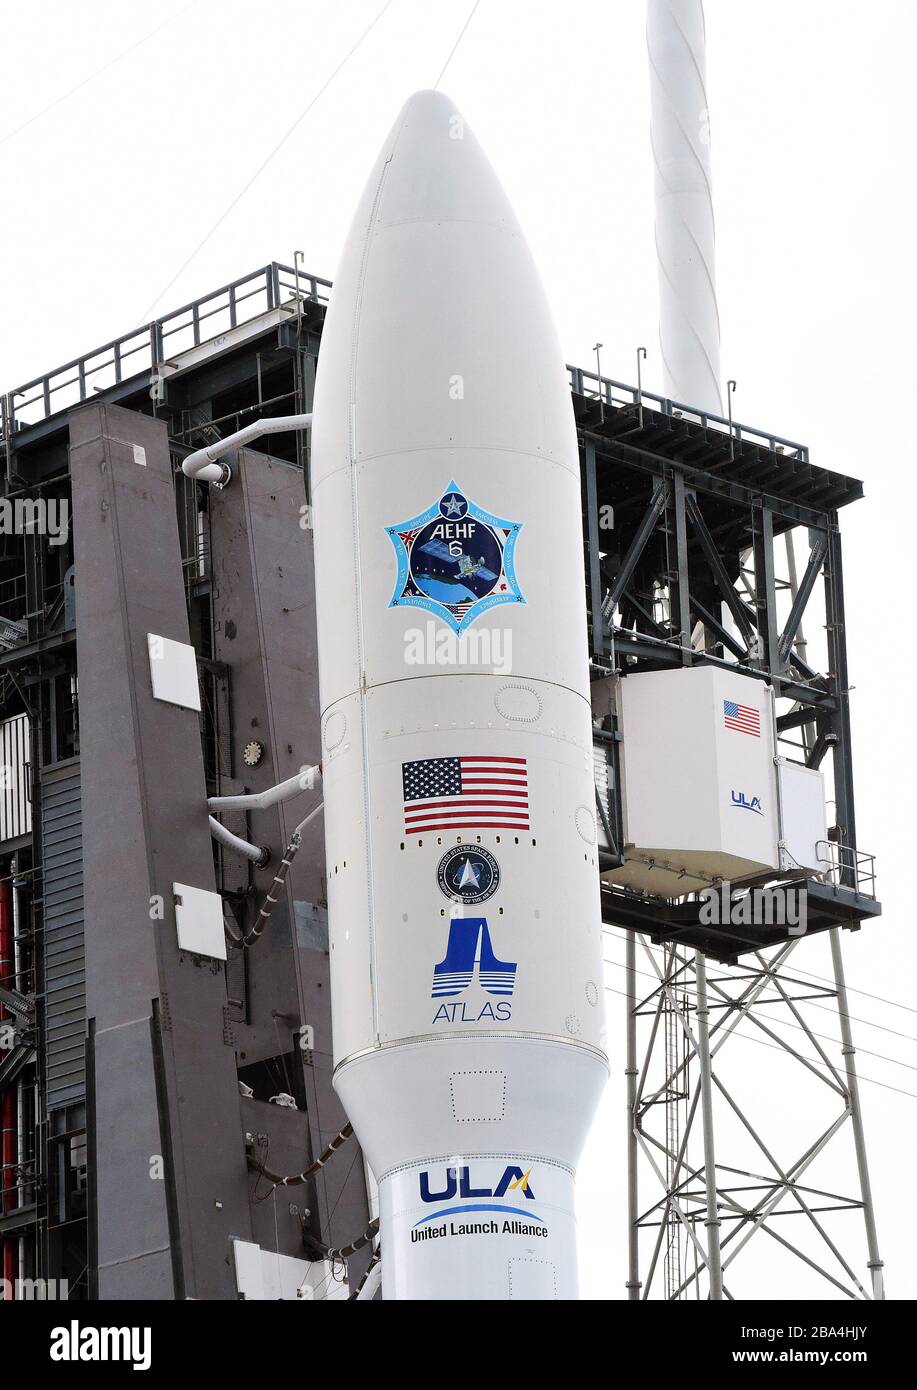 Cape Canaveral, États-Unis. 25 mars 2020. Le 25 mars 2020 - Cape Canaveral, Floride, États-Unis - une fusée Atlas V de l'Alliance de lancement des États-Unis avec un satellite de communications militaires à haute fréquence avancée (AEHF) pour une charge utile est vue le 25 mars 2020, La veille de son lancement prévu à la station aérienne de Cape Canaveral à Cape Canaveral, en Floride. Ce sera le premier lancement officiel de la nouvelle Force spatiale américaine. Crédit: Paul Hennessy/Alay Live News Banque D'Images